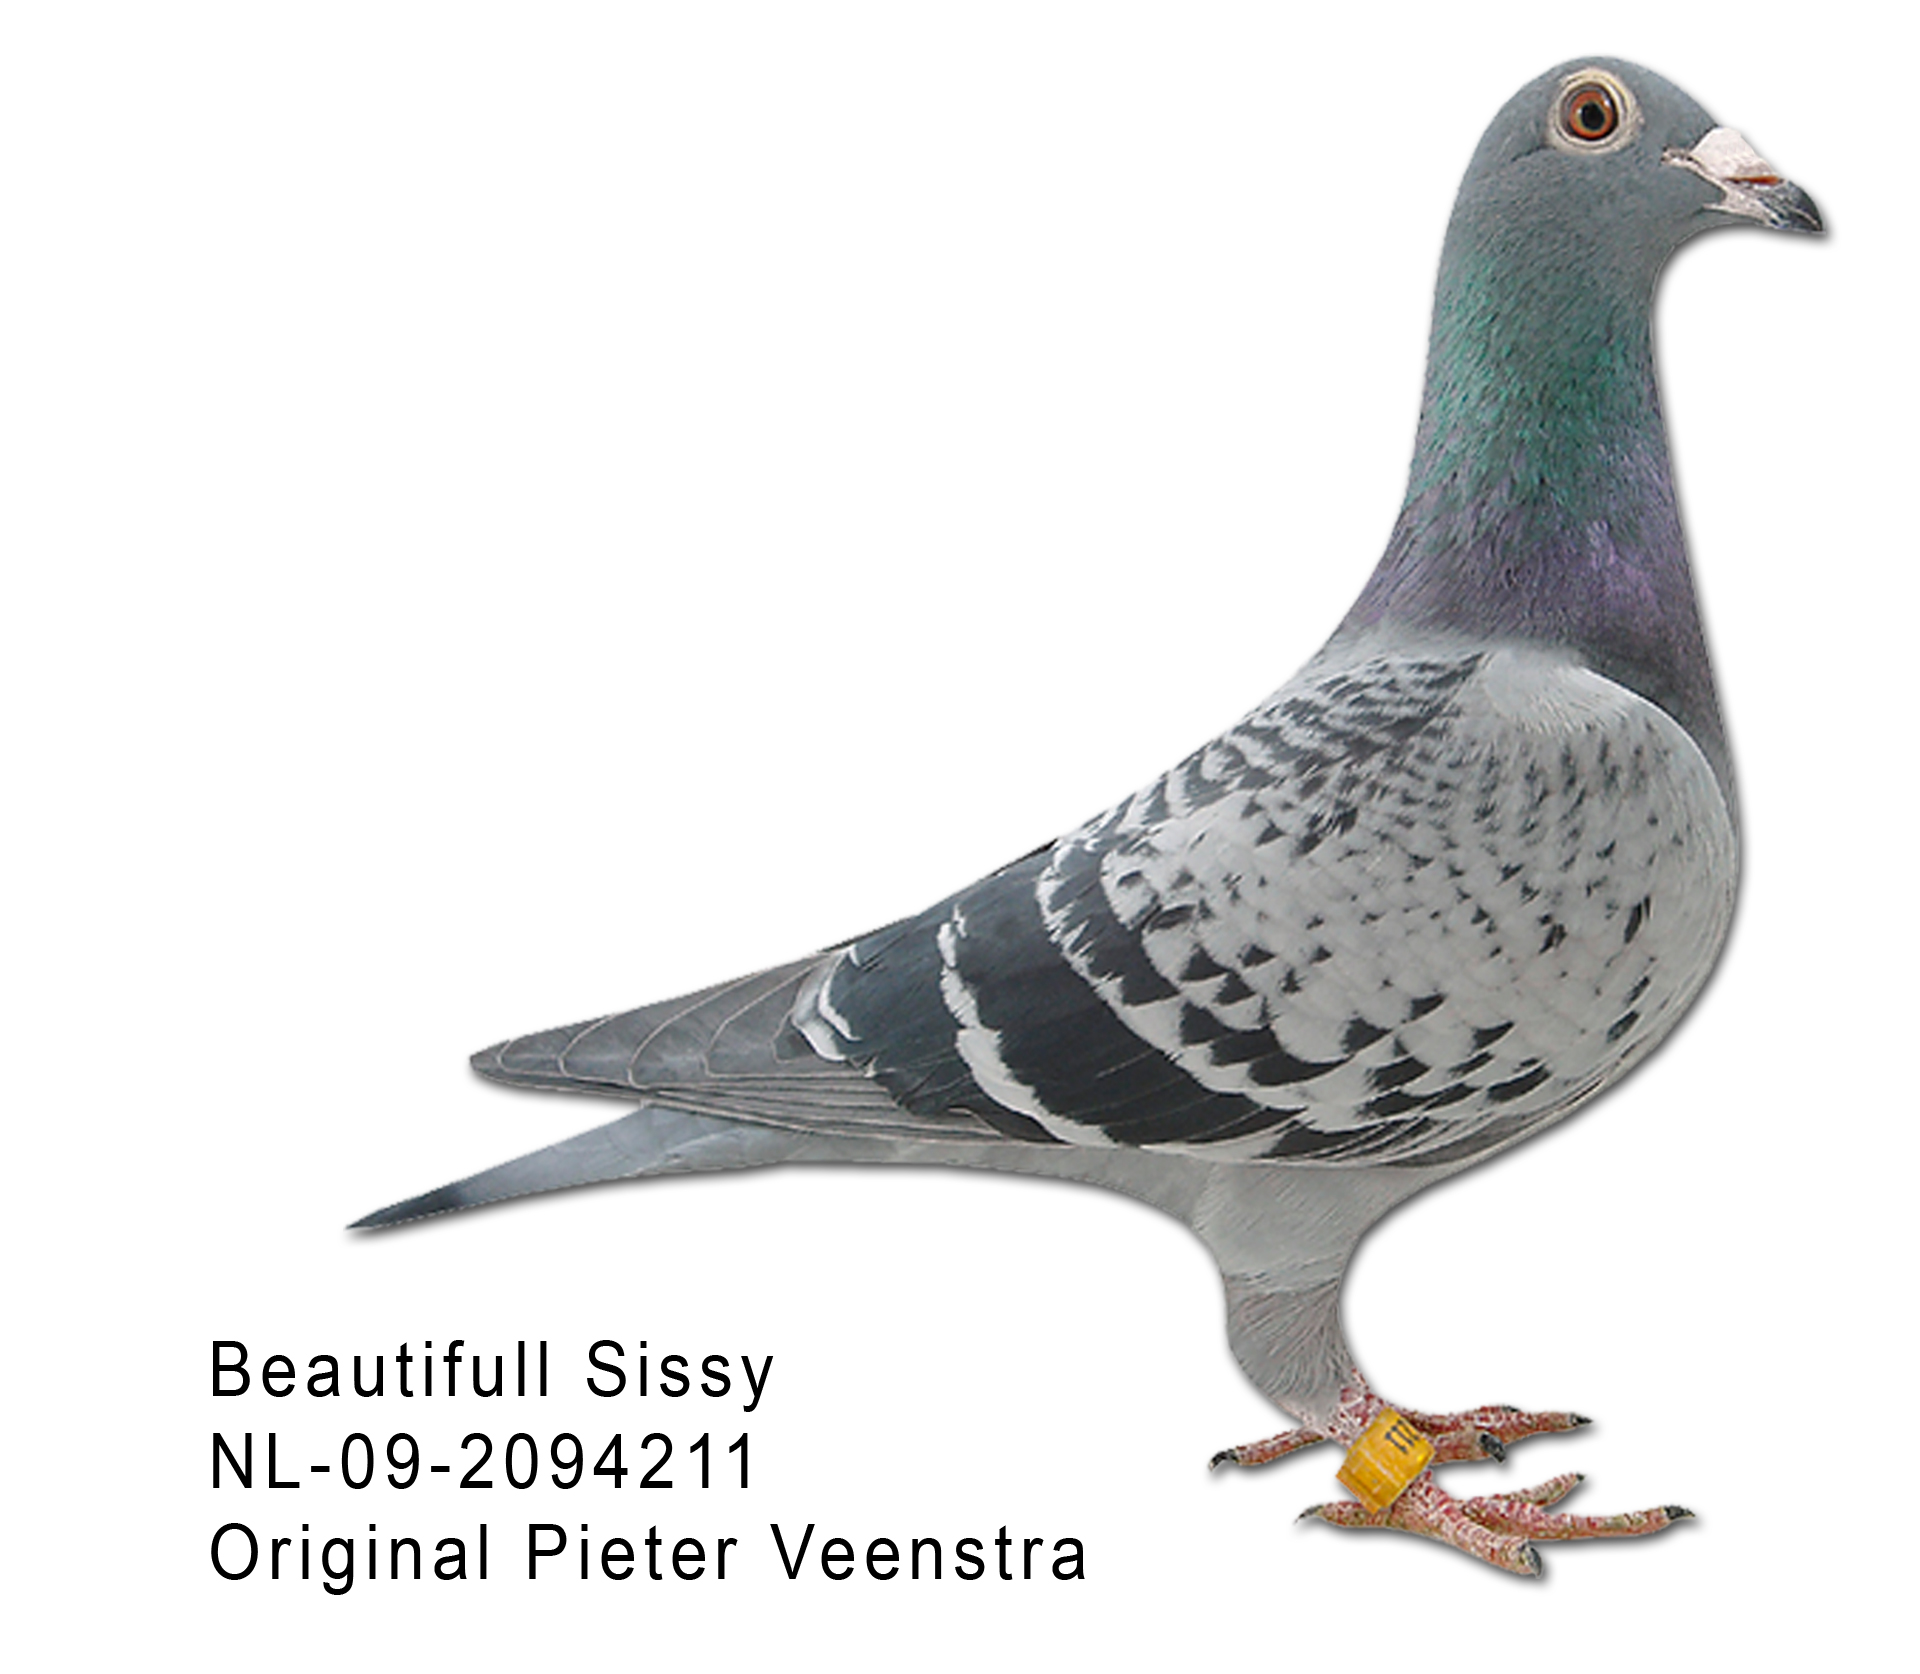  - Original Pieter Veenstra NL 09 20994211 Beautiful Sissy